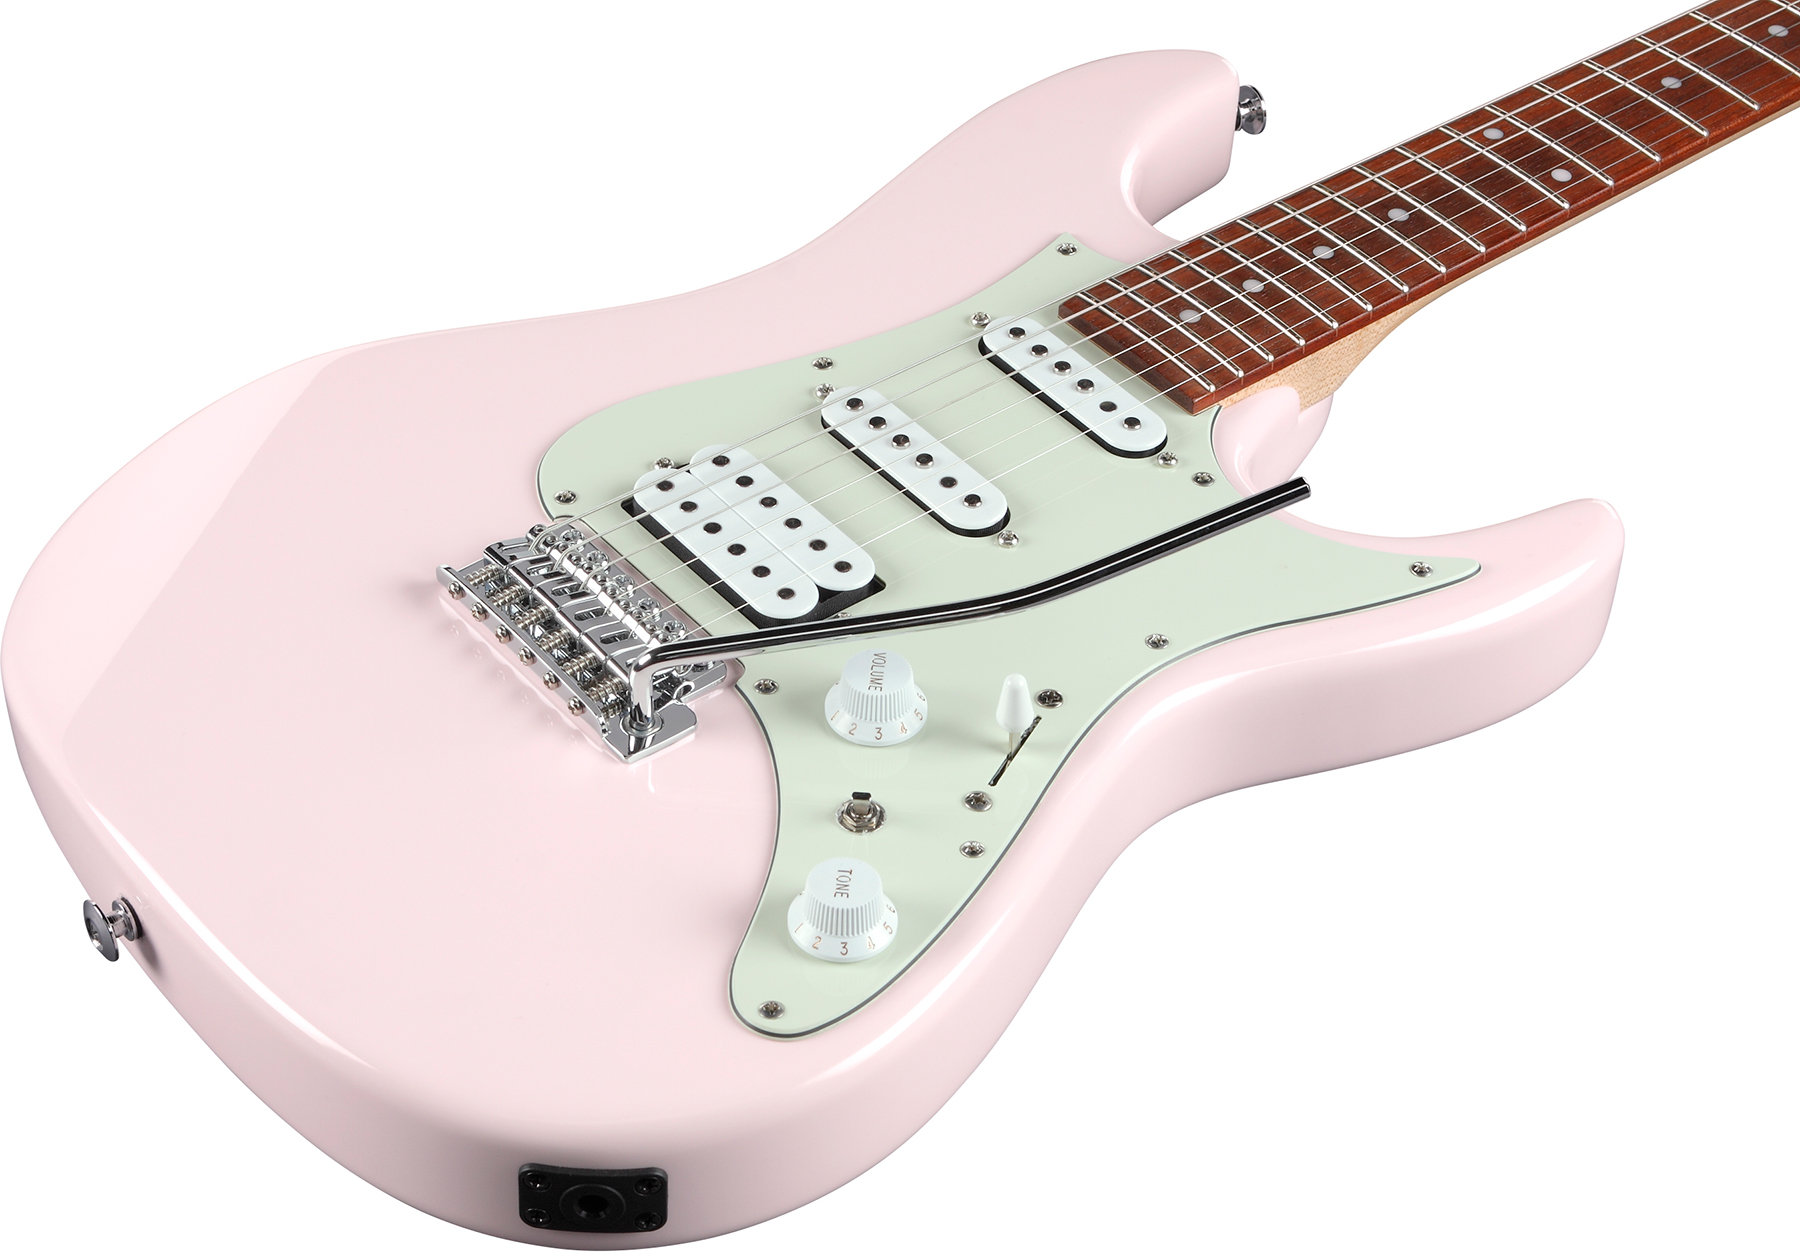 Ibanez Azes40 Ppk Standard Hss Trem Jat - Pastel Pink - Str shape electric guitar - Variation 2